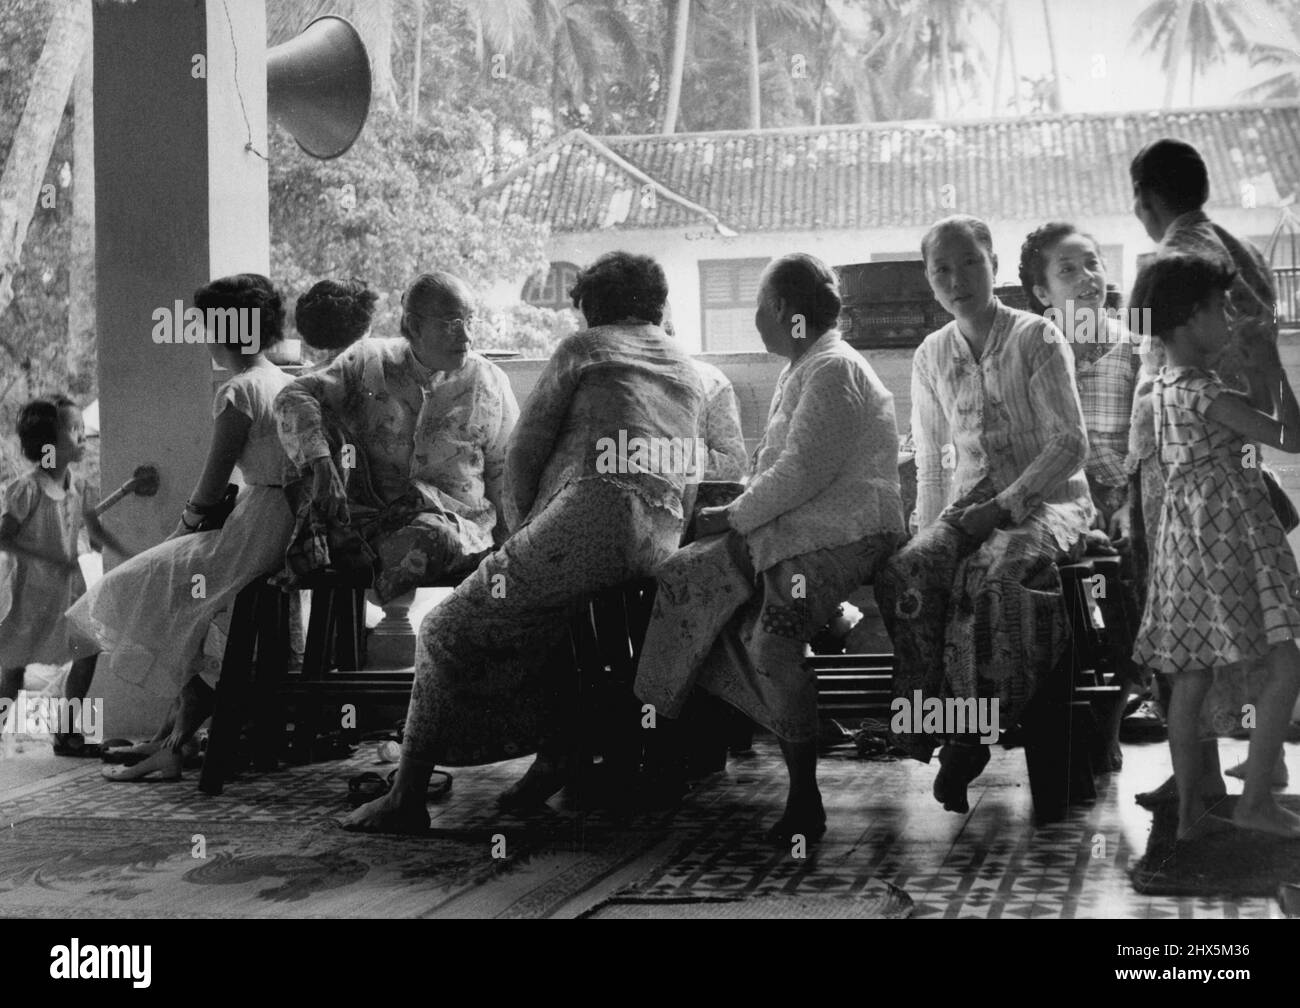 Un groupe de femmes de Ceylonese vivant sur Penang. Ils sont représentatifs de l'un des petits groupes minoritaires de la Malaisie. Ces femmes ont été photographiées à l'extérieur du temple de Ceylonese à Penang où une célébration religieuse était en cours. 28 décembre 1955. Banque D'Images